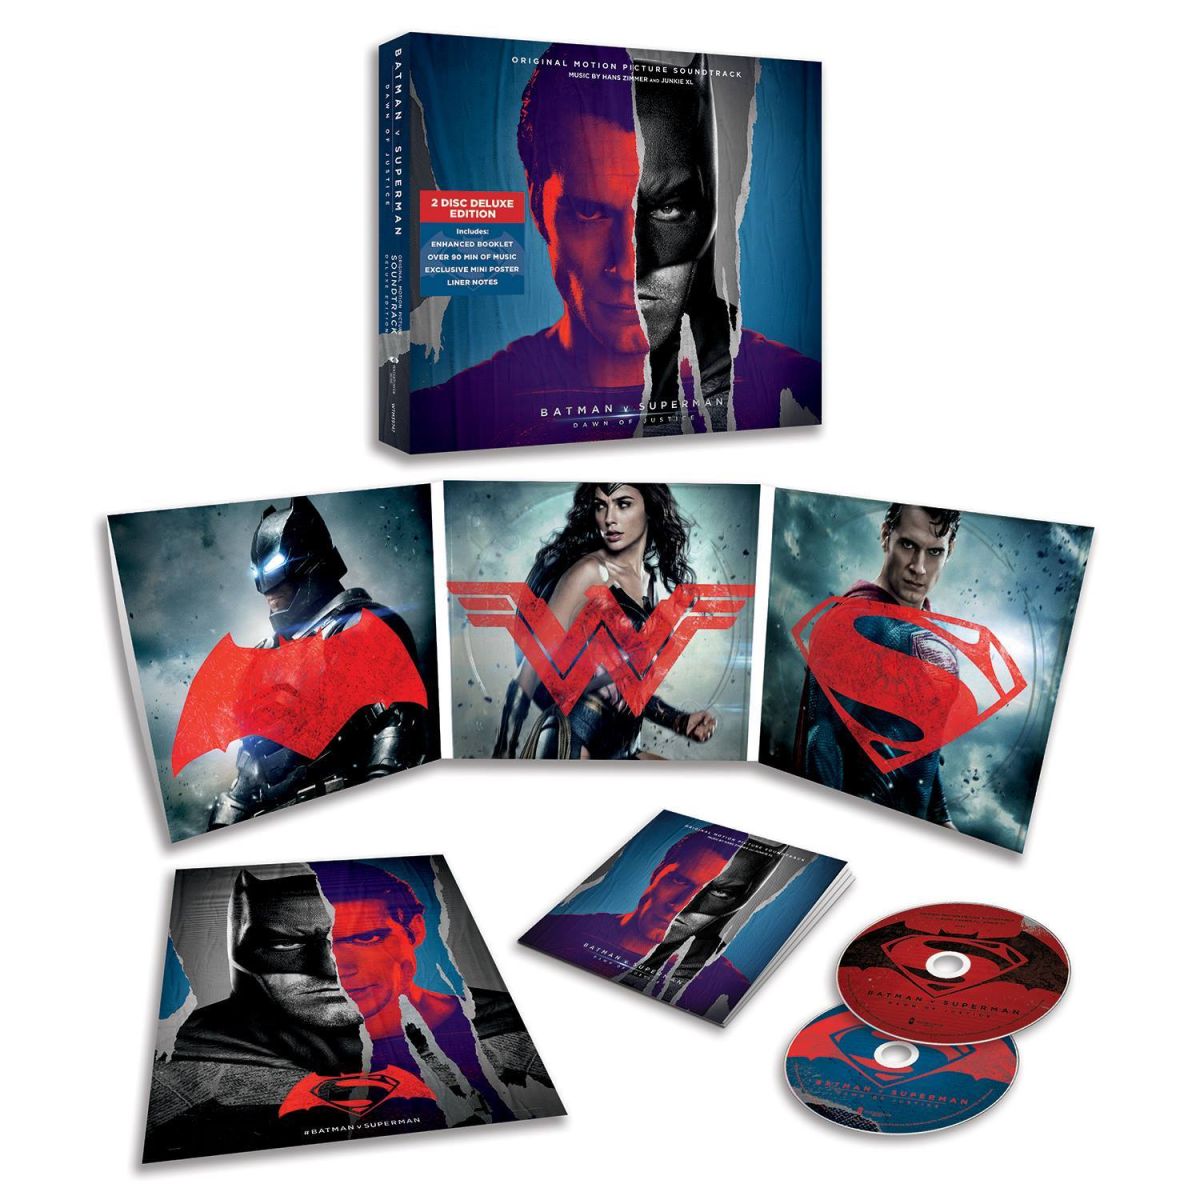 La banda sonora de 'Batman v Superman' llegará el 18 de marzo, pero puedes verla aquí mismo